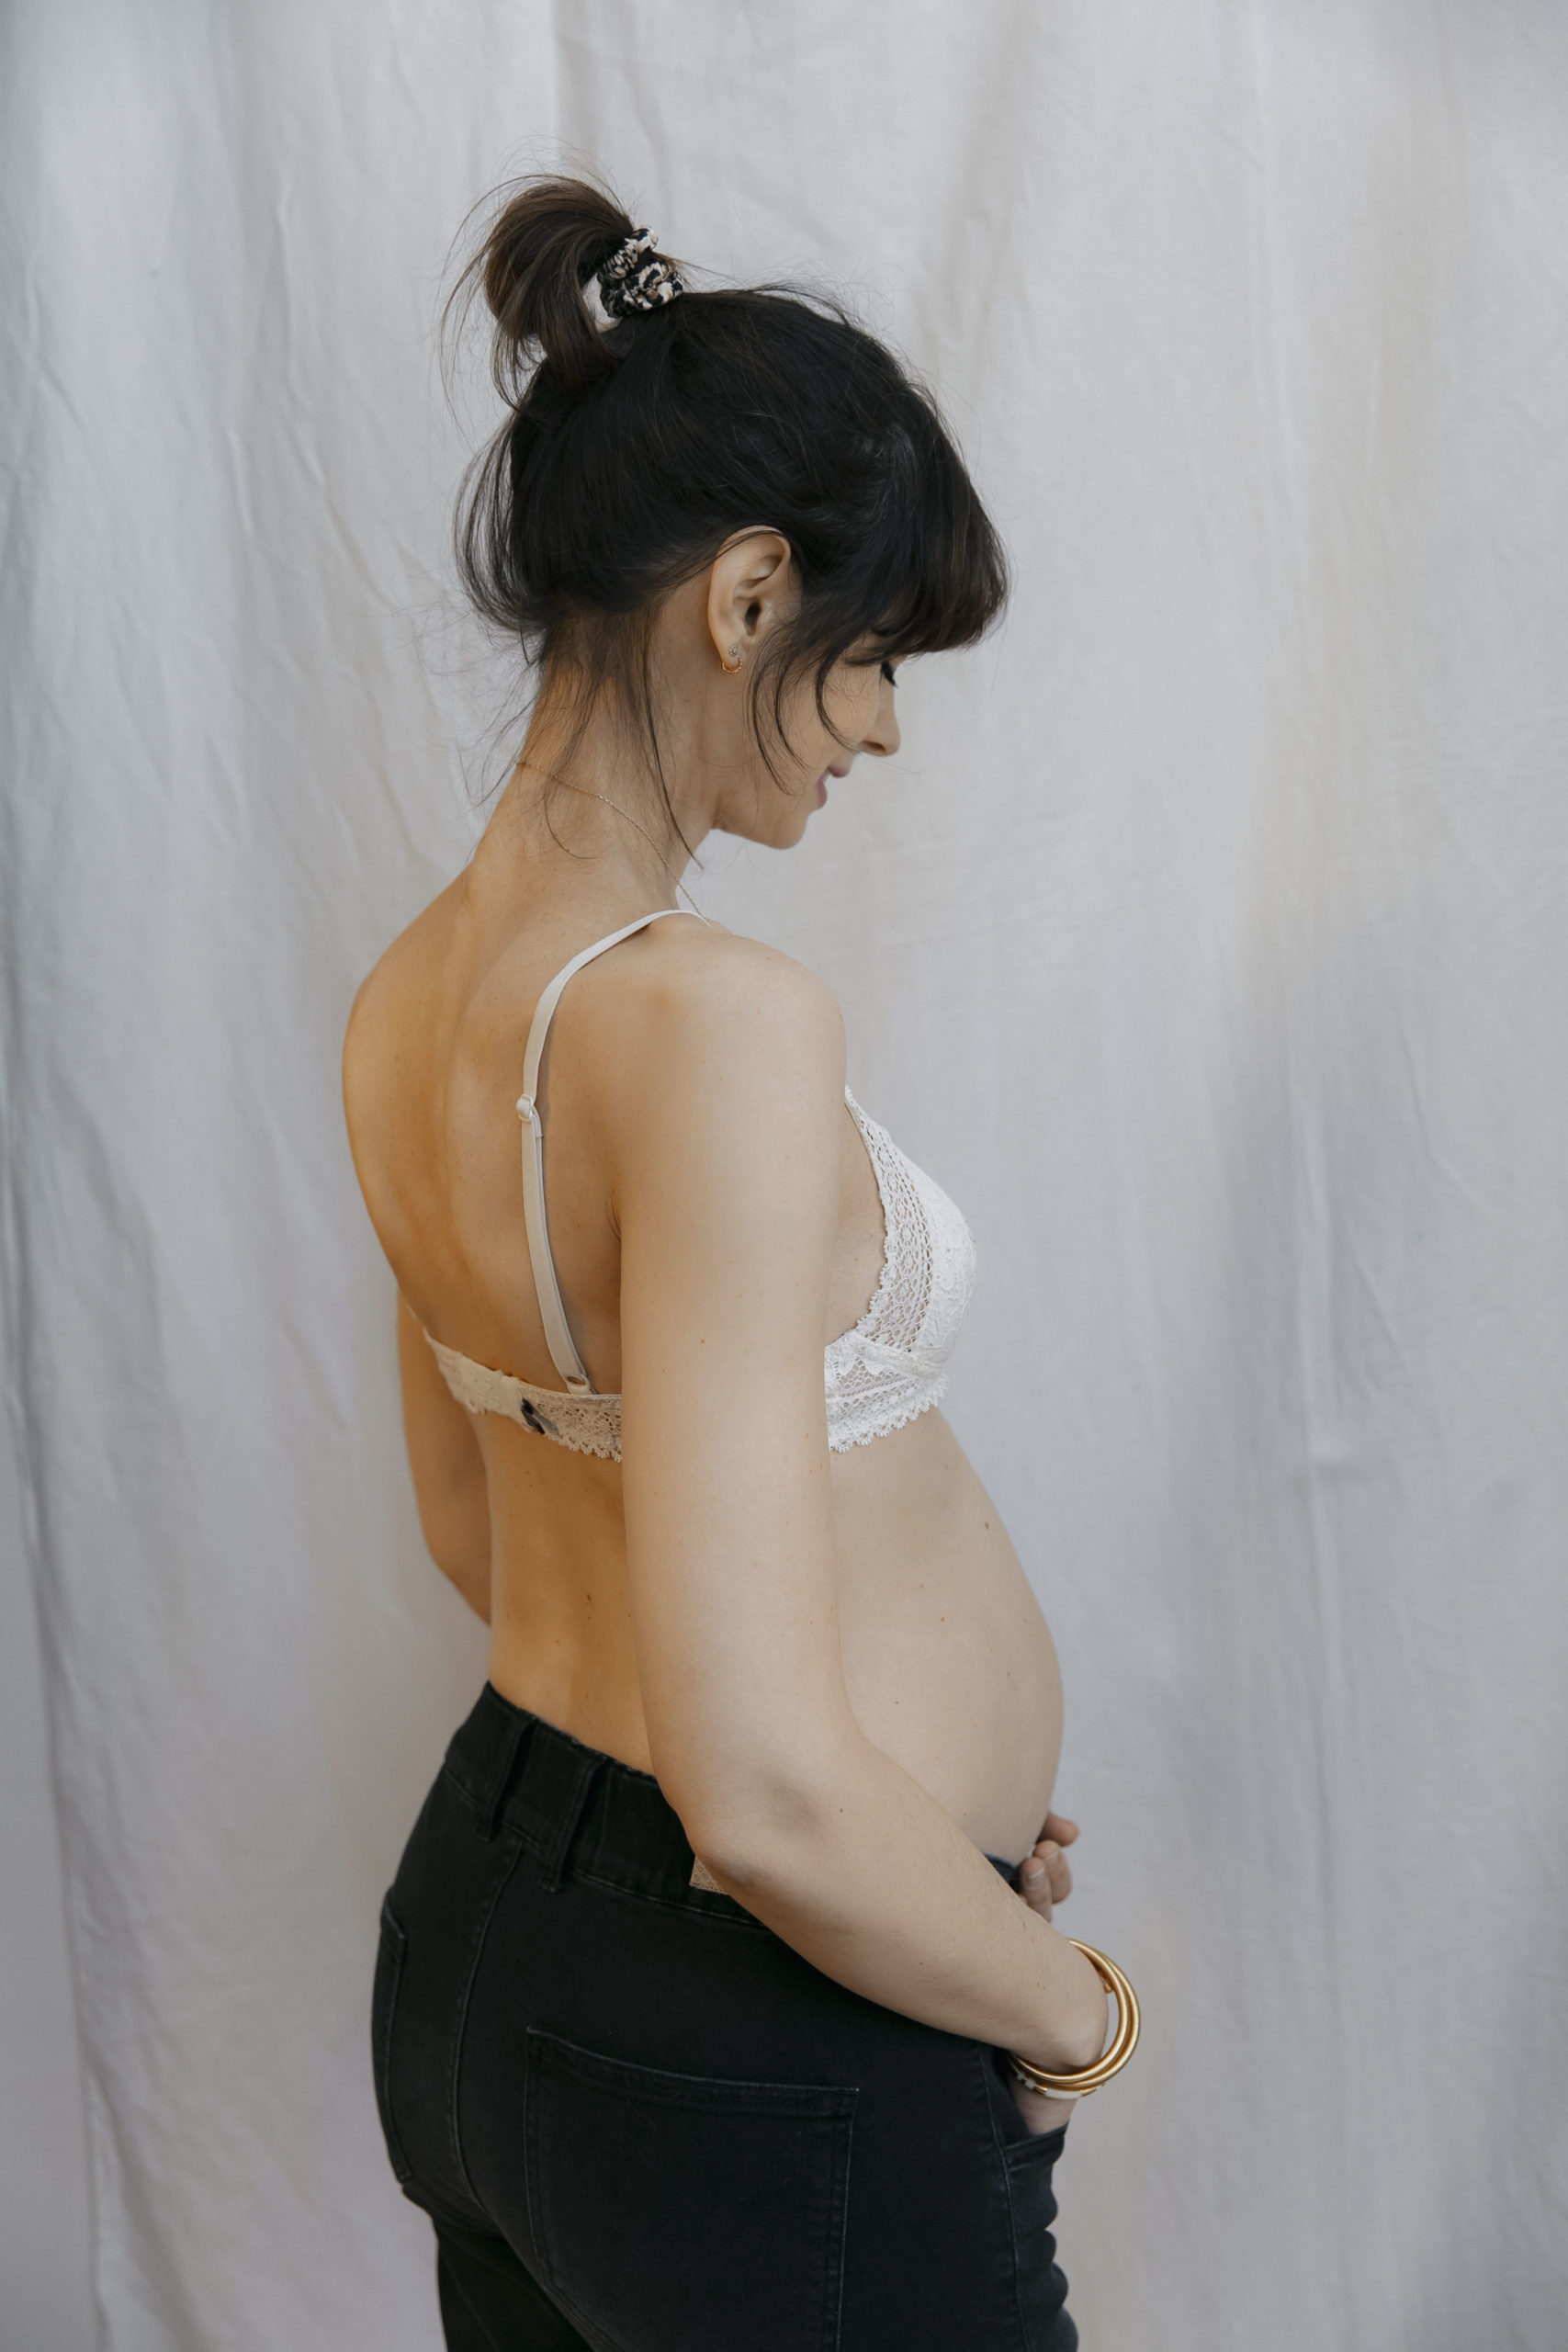 Pantalon yoga grossesse et post-grossesse - noir, Vêtements de grossesse